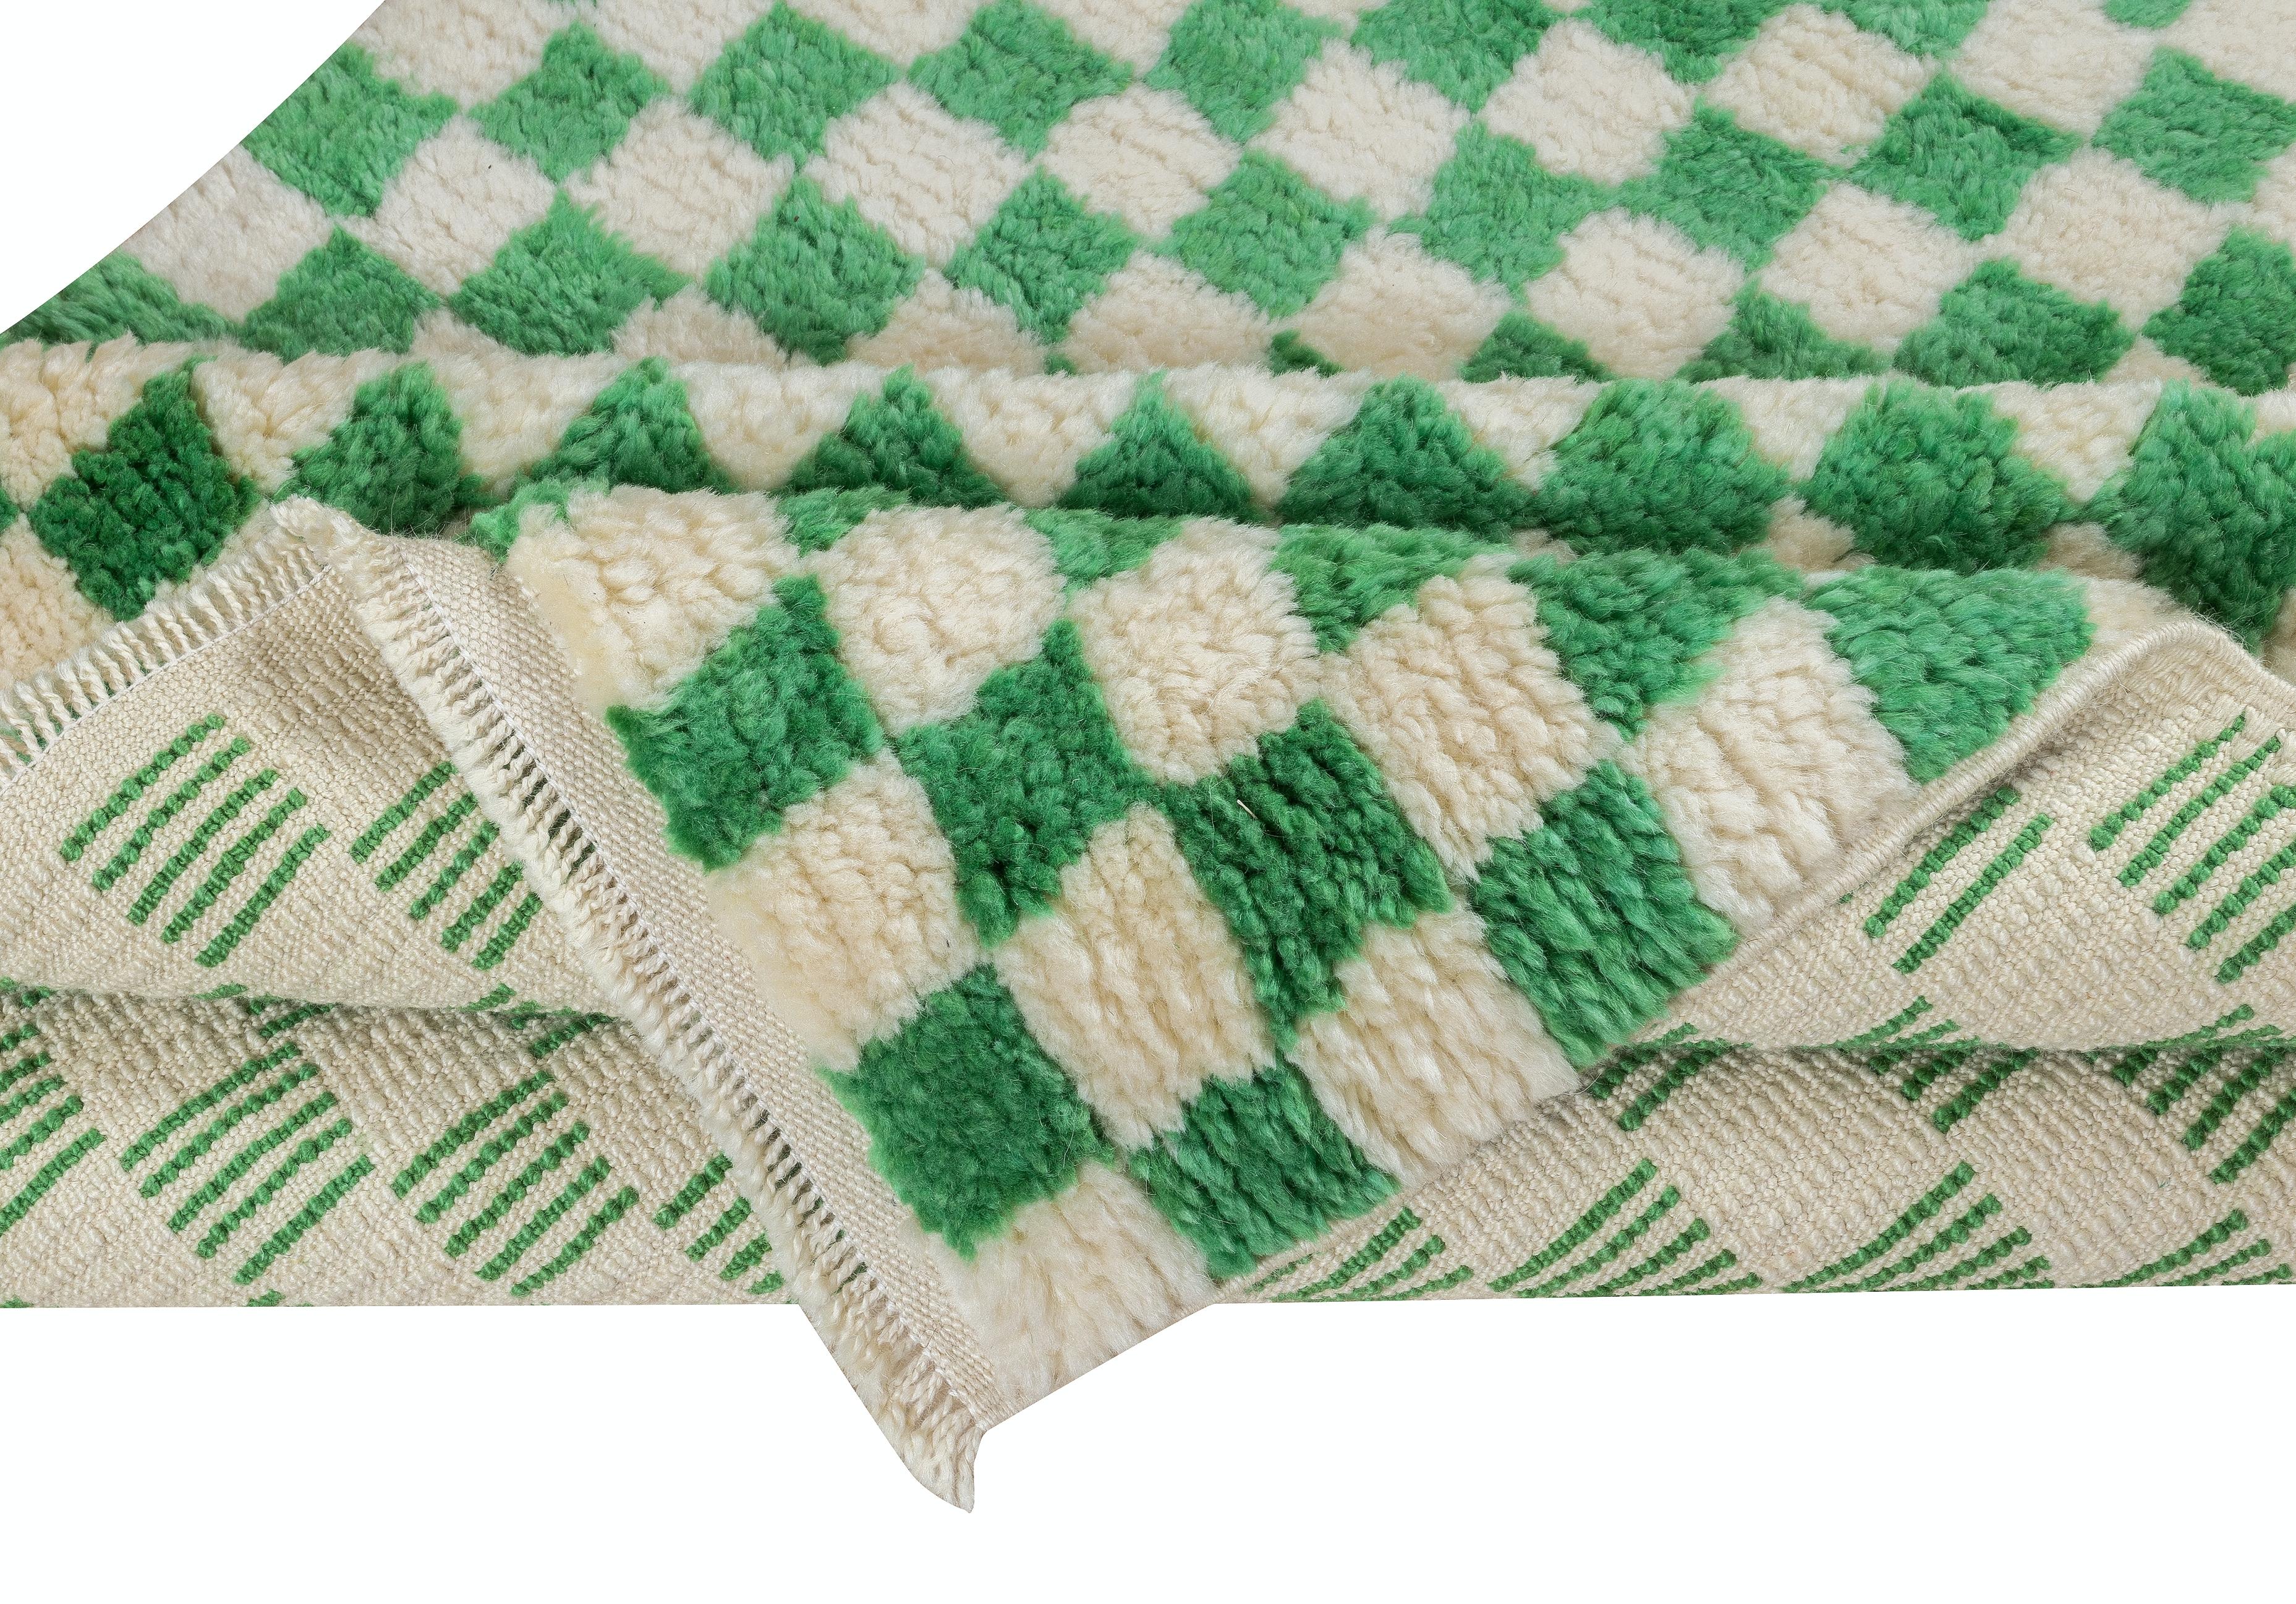 Ein maßgeschneiderter, handgefertigter Tulu-Teppich aus 100% handgesponnener Wolle von feinster Qualität. Es zeichnet sich durch ein schlichtes Karomuster in Creme und leuchtendem Smaragdgrün aus.

Diese schönen Teppiche werden in unserer Werkstatt